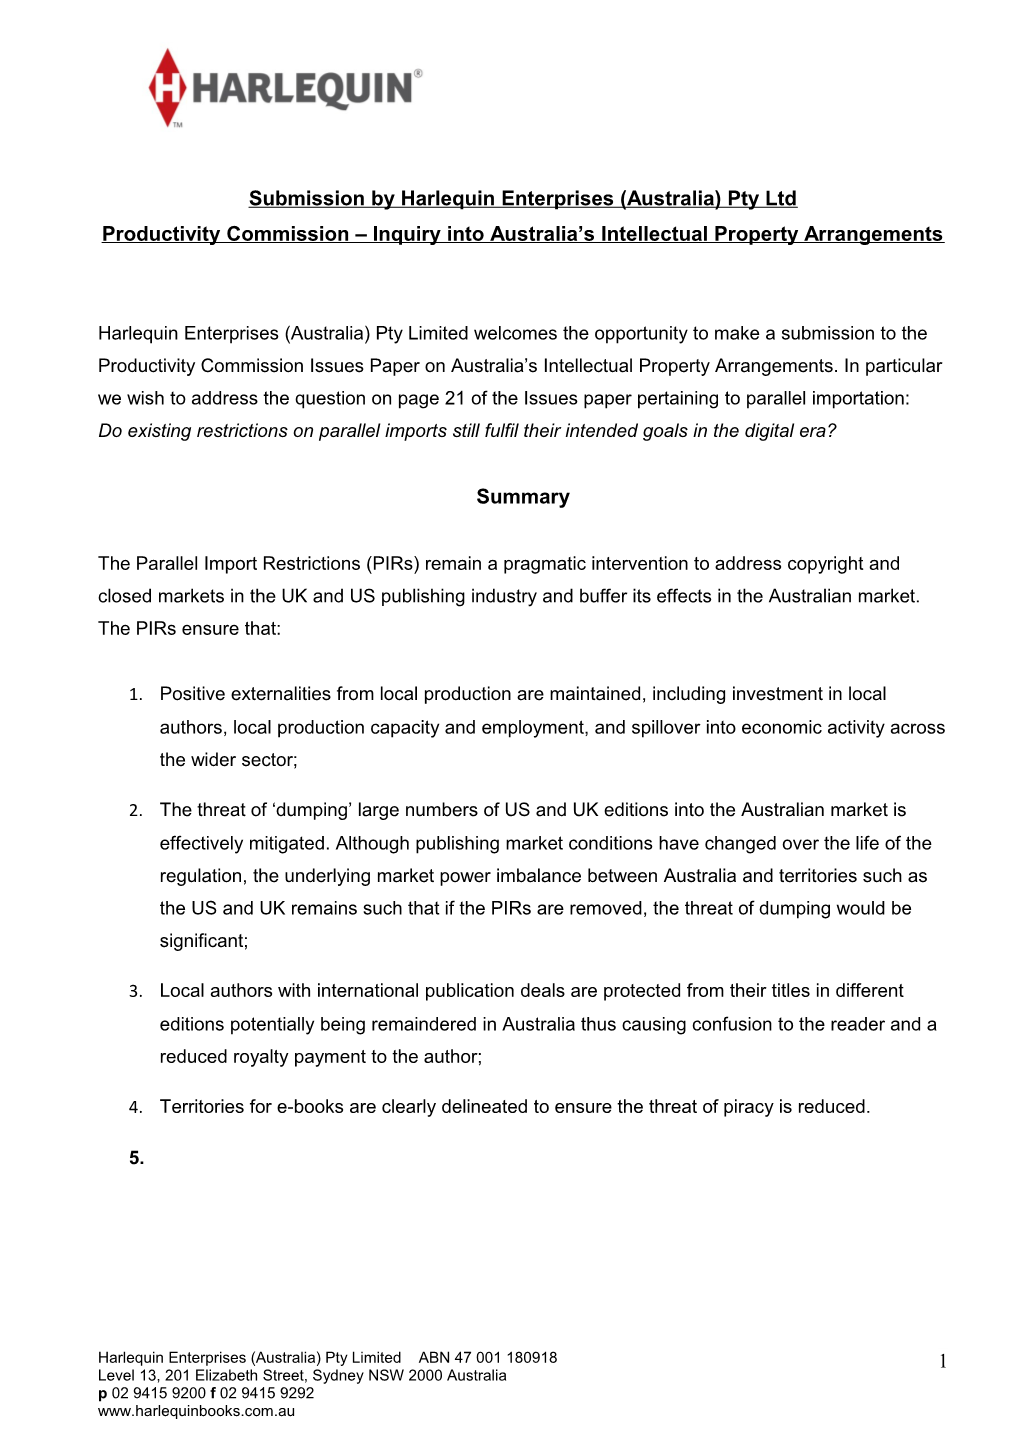 Submission 45 - Harlequin Enterprises (Australia) Pty Ltd -Intellectual Property Arrangements